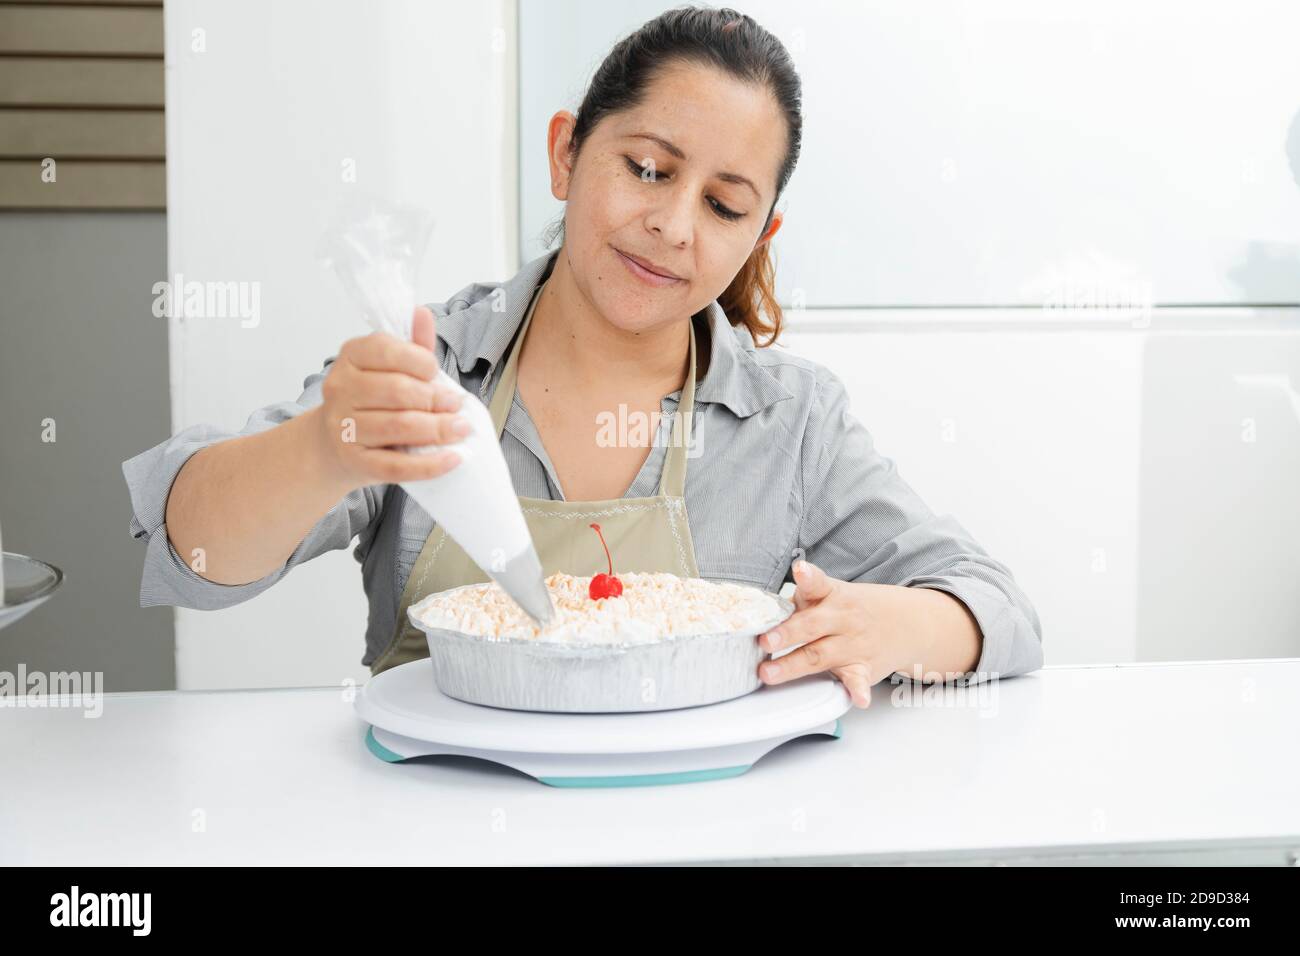 Femme hispanique dans sa pâtisserie décorant un gâteau - femme mettre de la crème fouettée sur un gâteau fraîchement cuit - femme entreprenante Banque D'Images